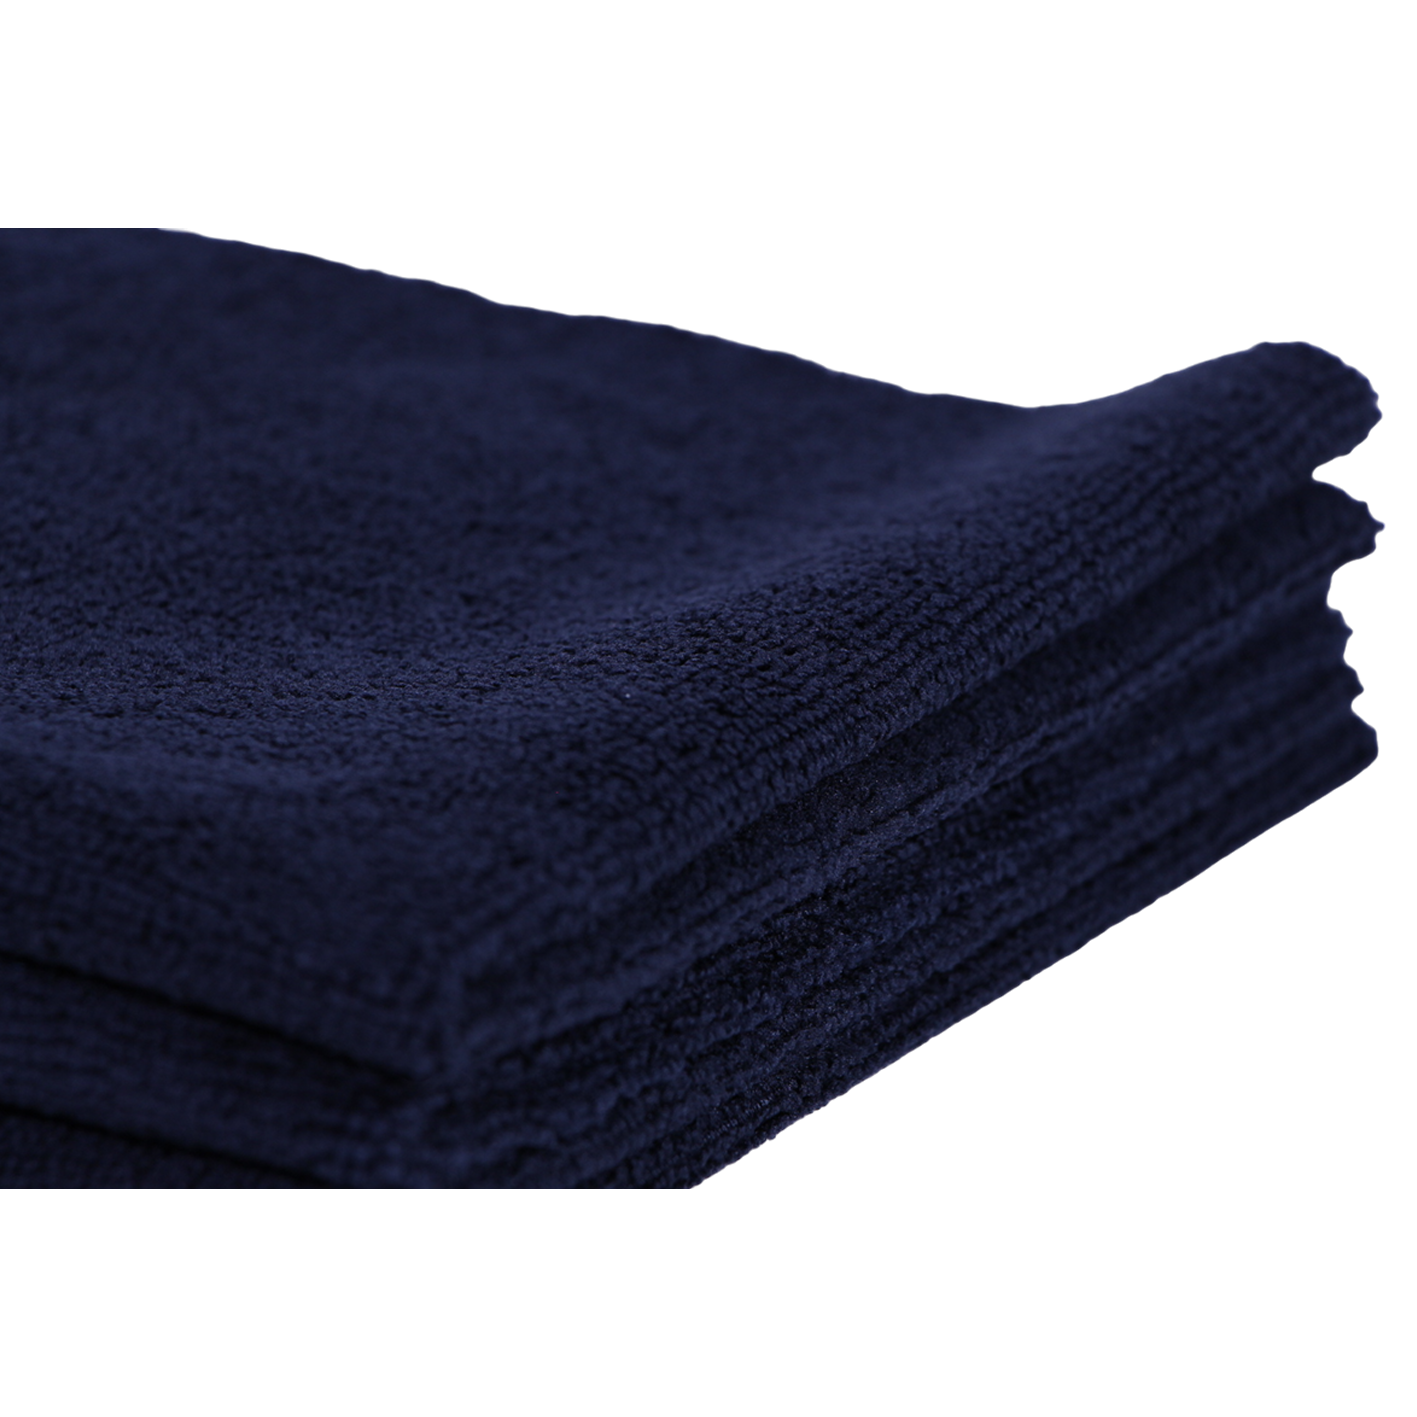 Mas Chingon Black Fluffy Towel (3pack)